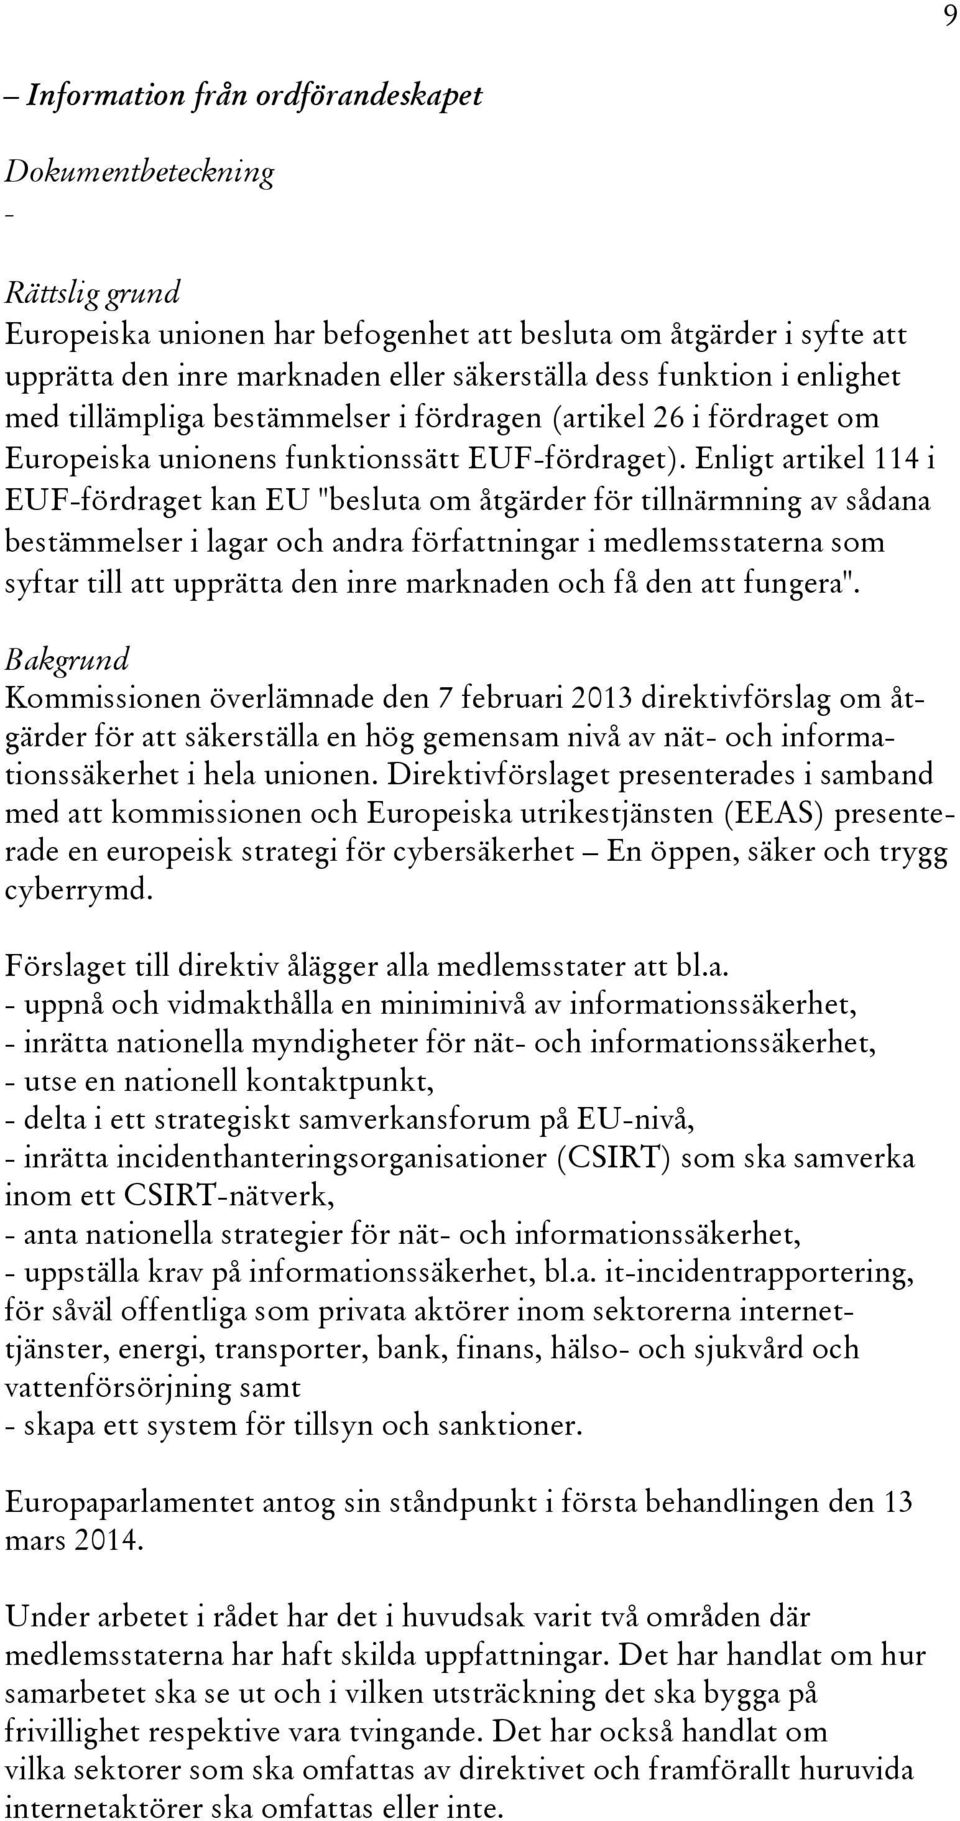 Enligt artikel 114 i EUF-fördraget kan EU "besluta om åtgärder för tillnärmning av sådana bestämmelser i lagar och andra författningar i medlemsstaterna som syftar till att upprätta den inre